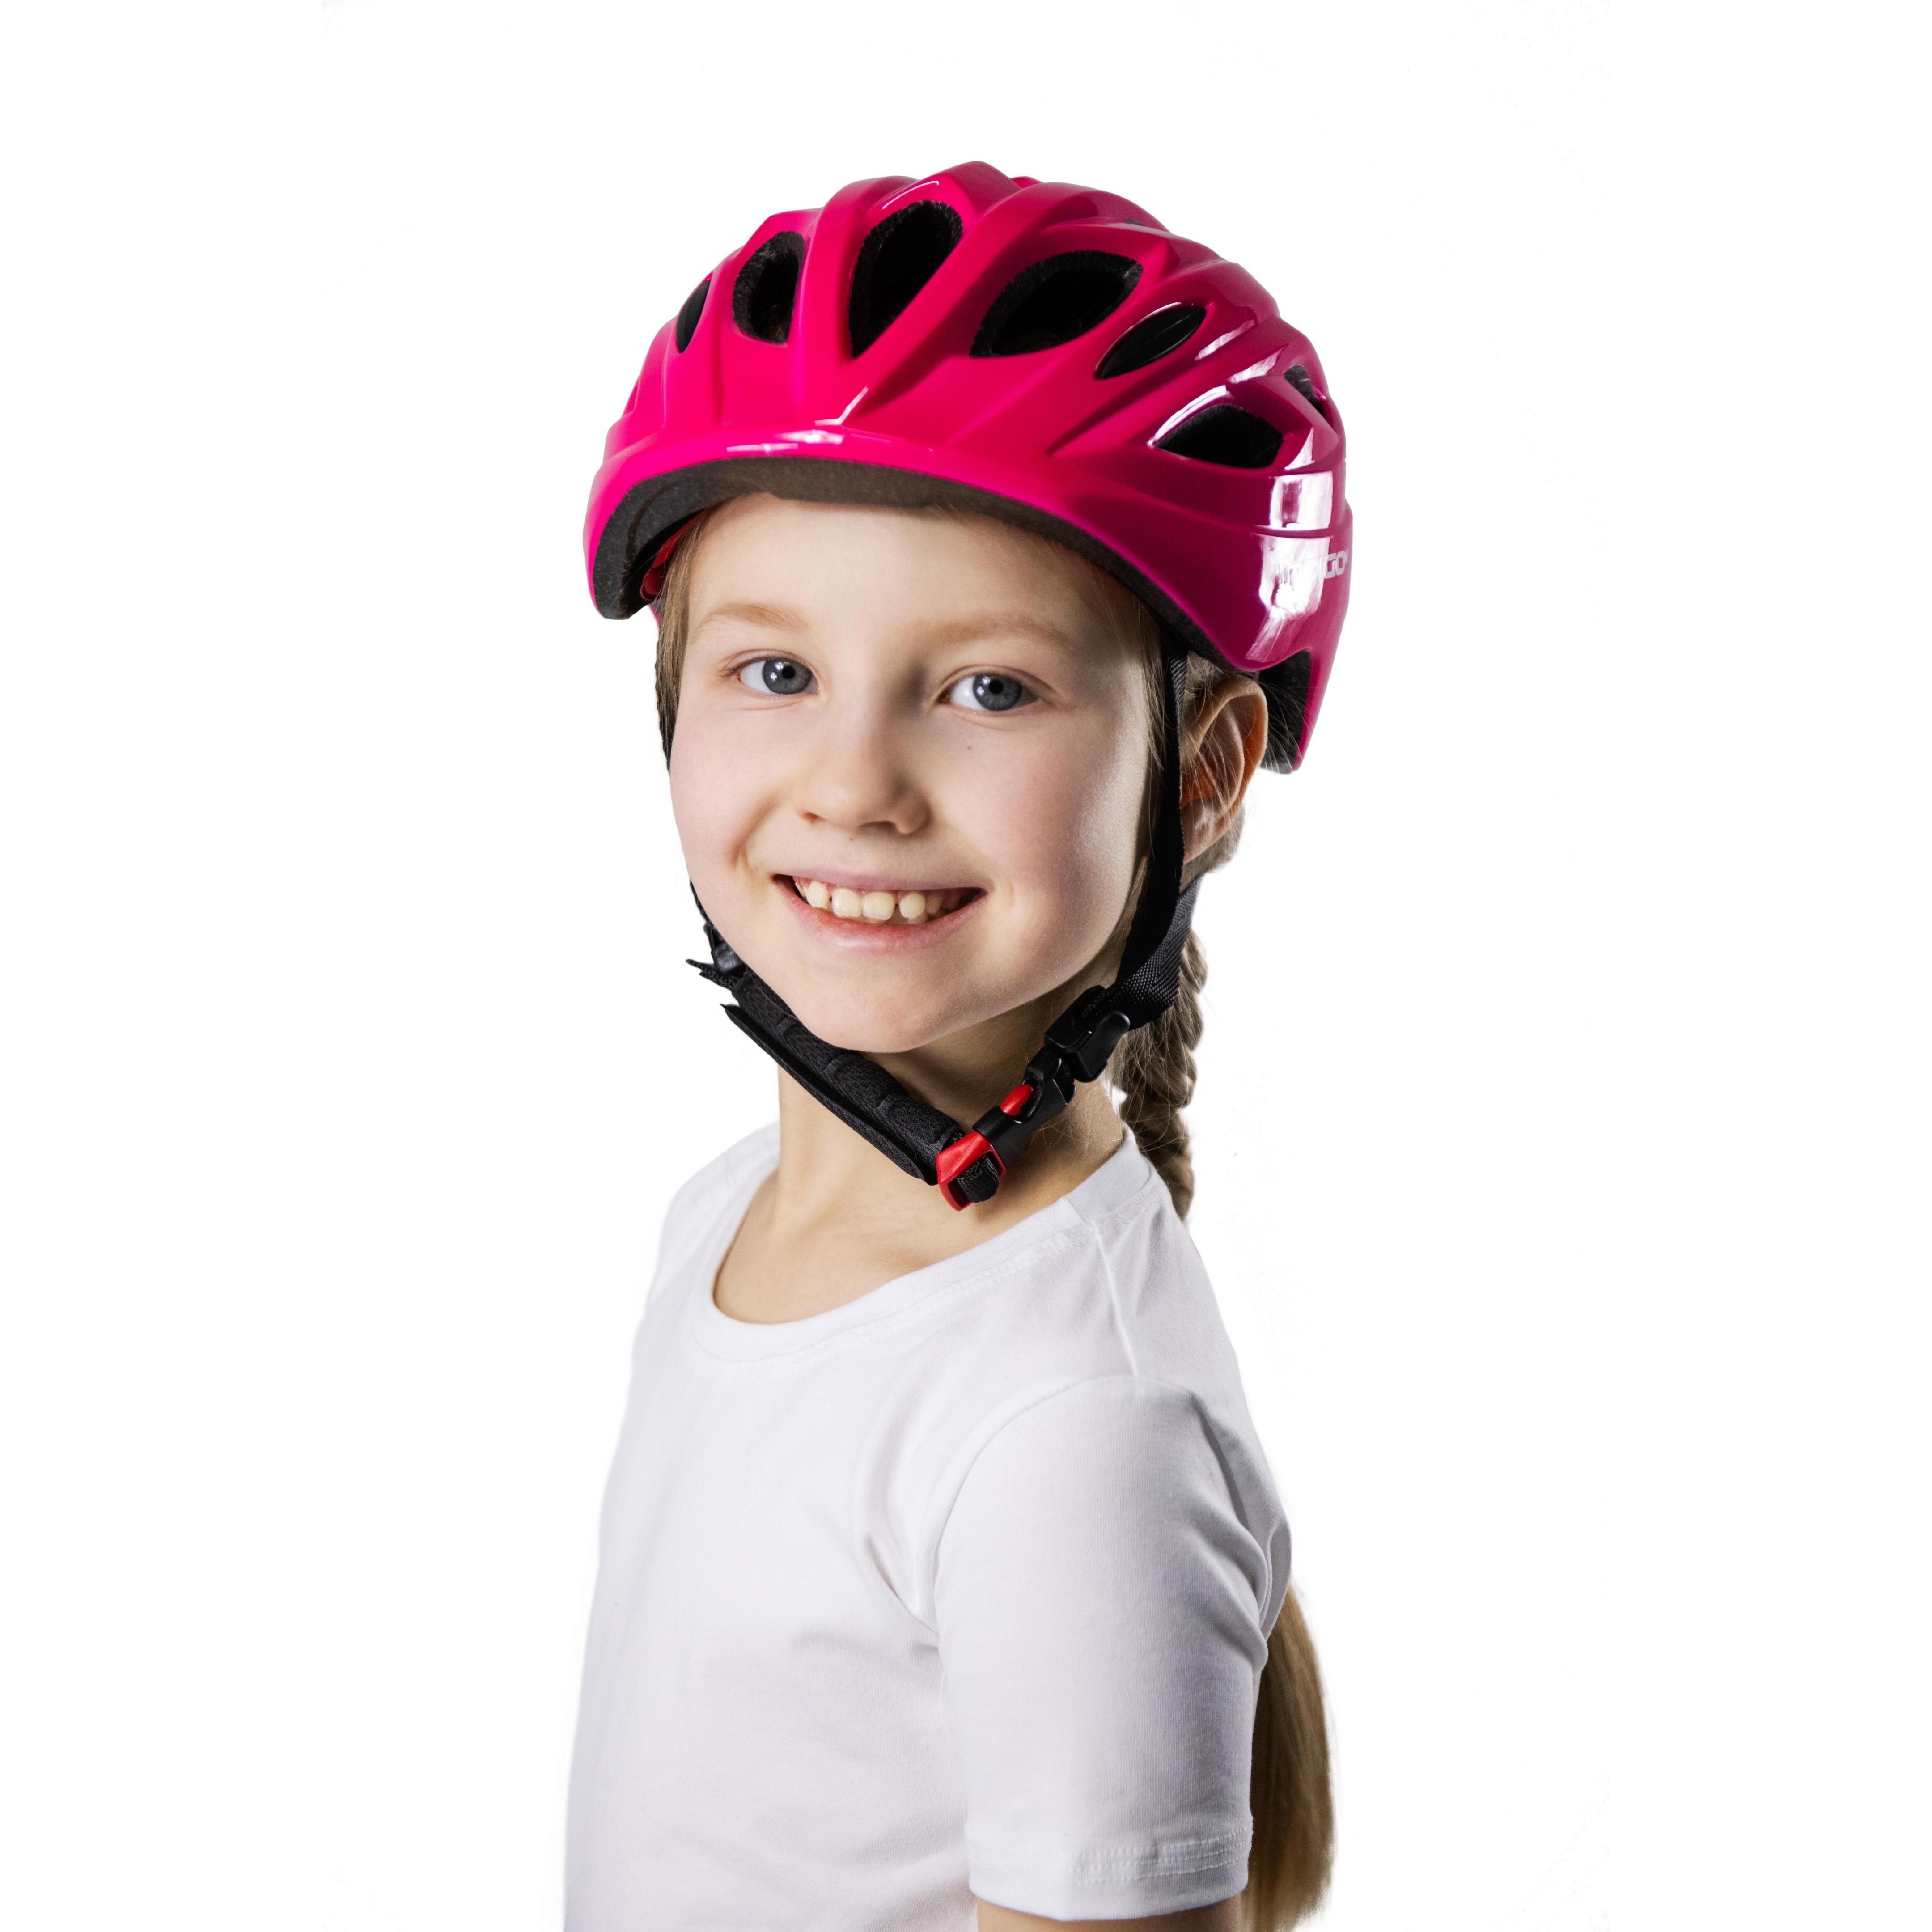 Casco de Bicicleta Infantil con Ventilación INDIGO 51-55 cm Rosa